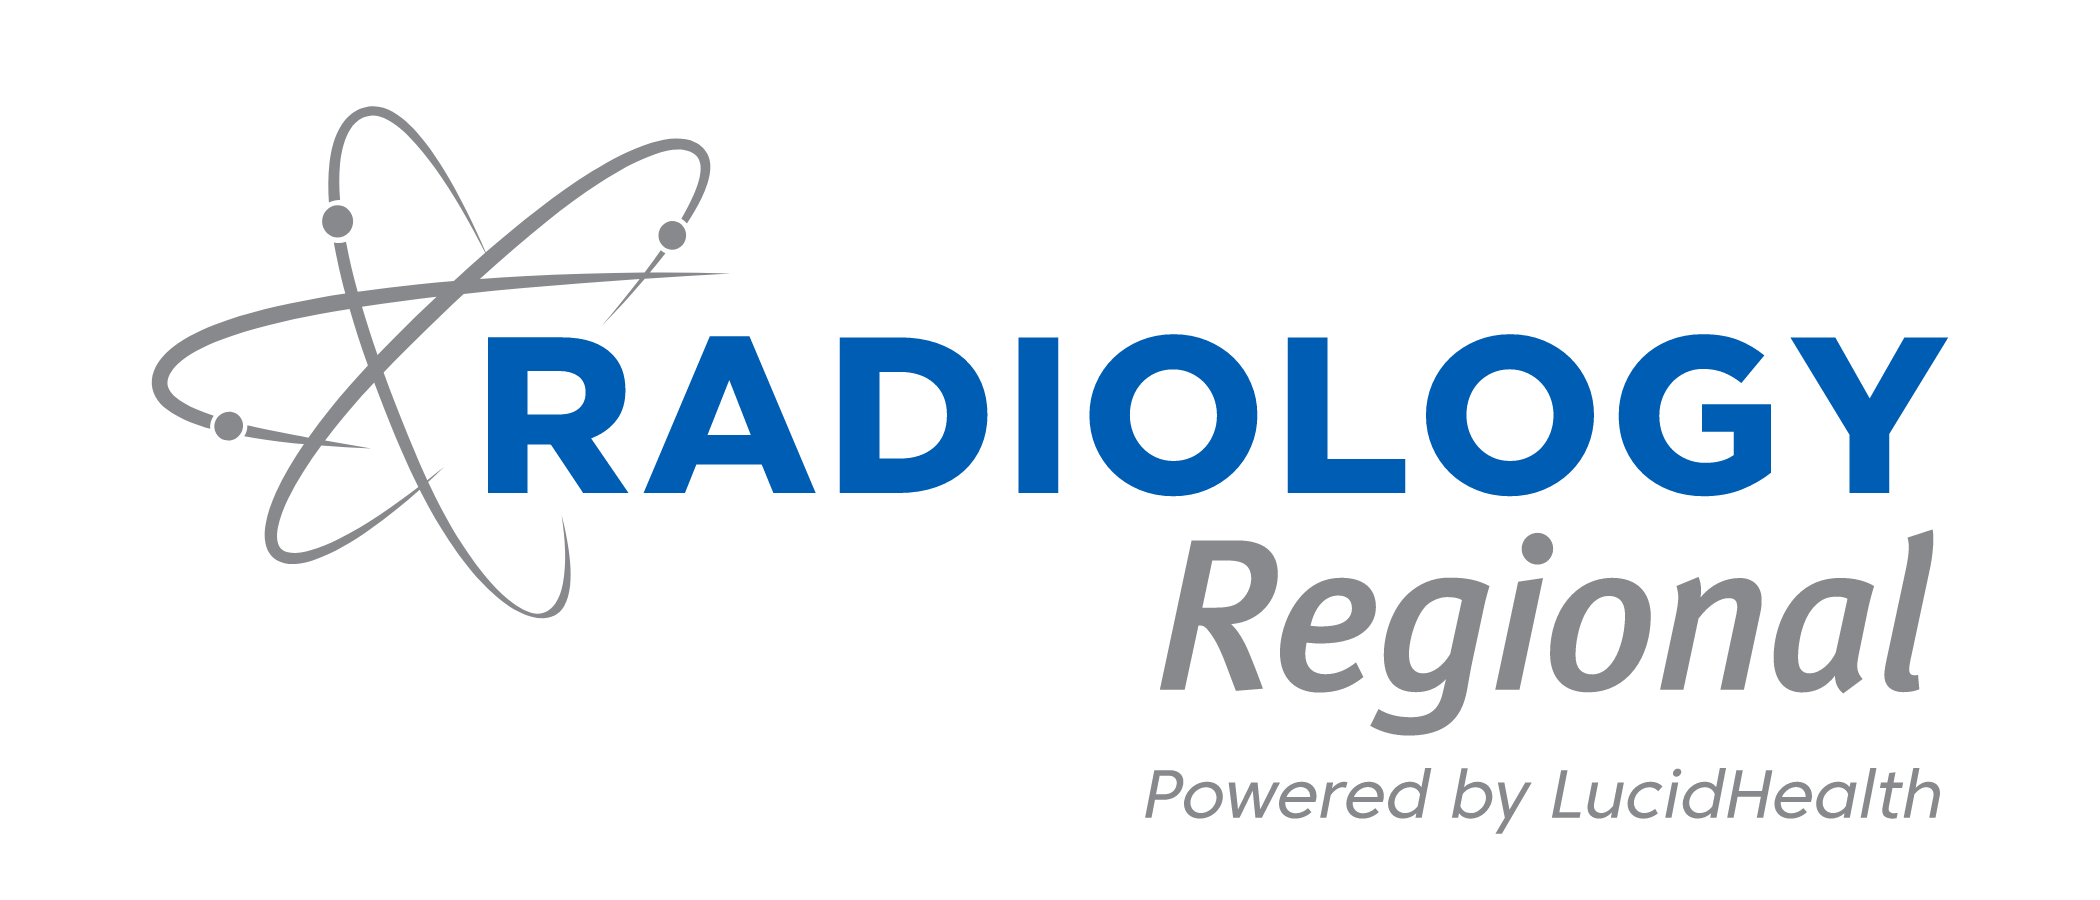 Radiology Regional